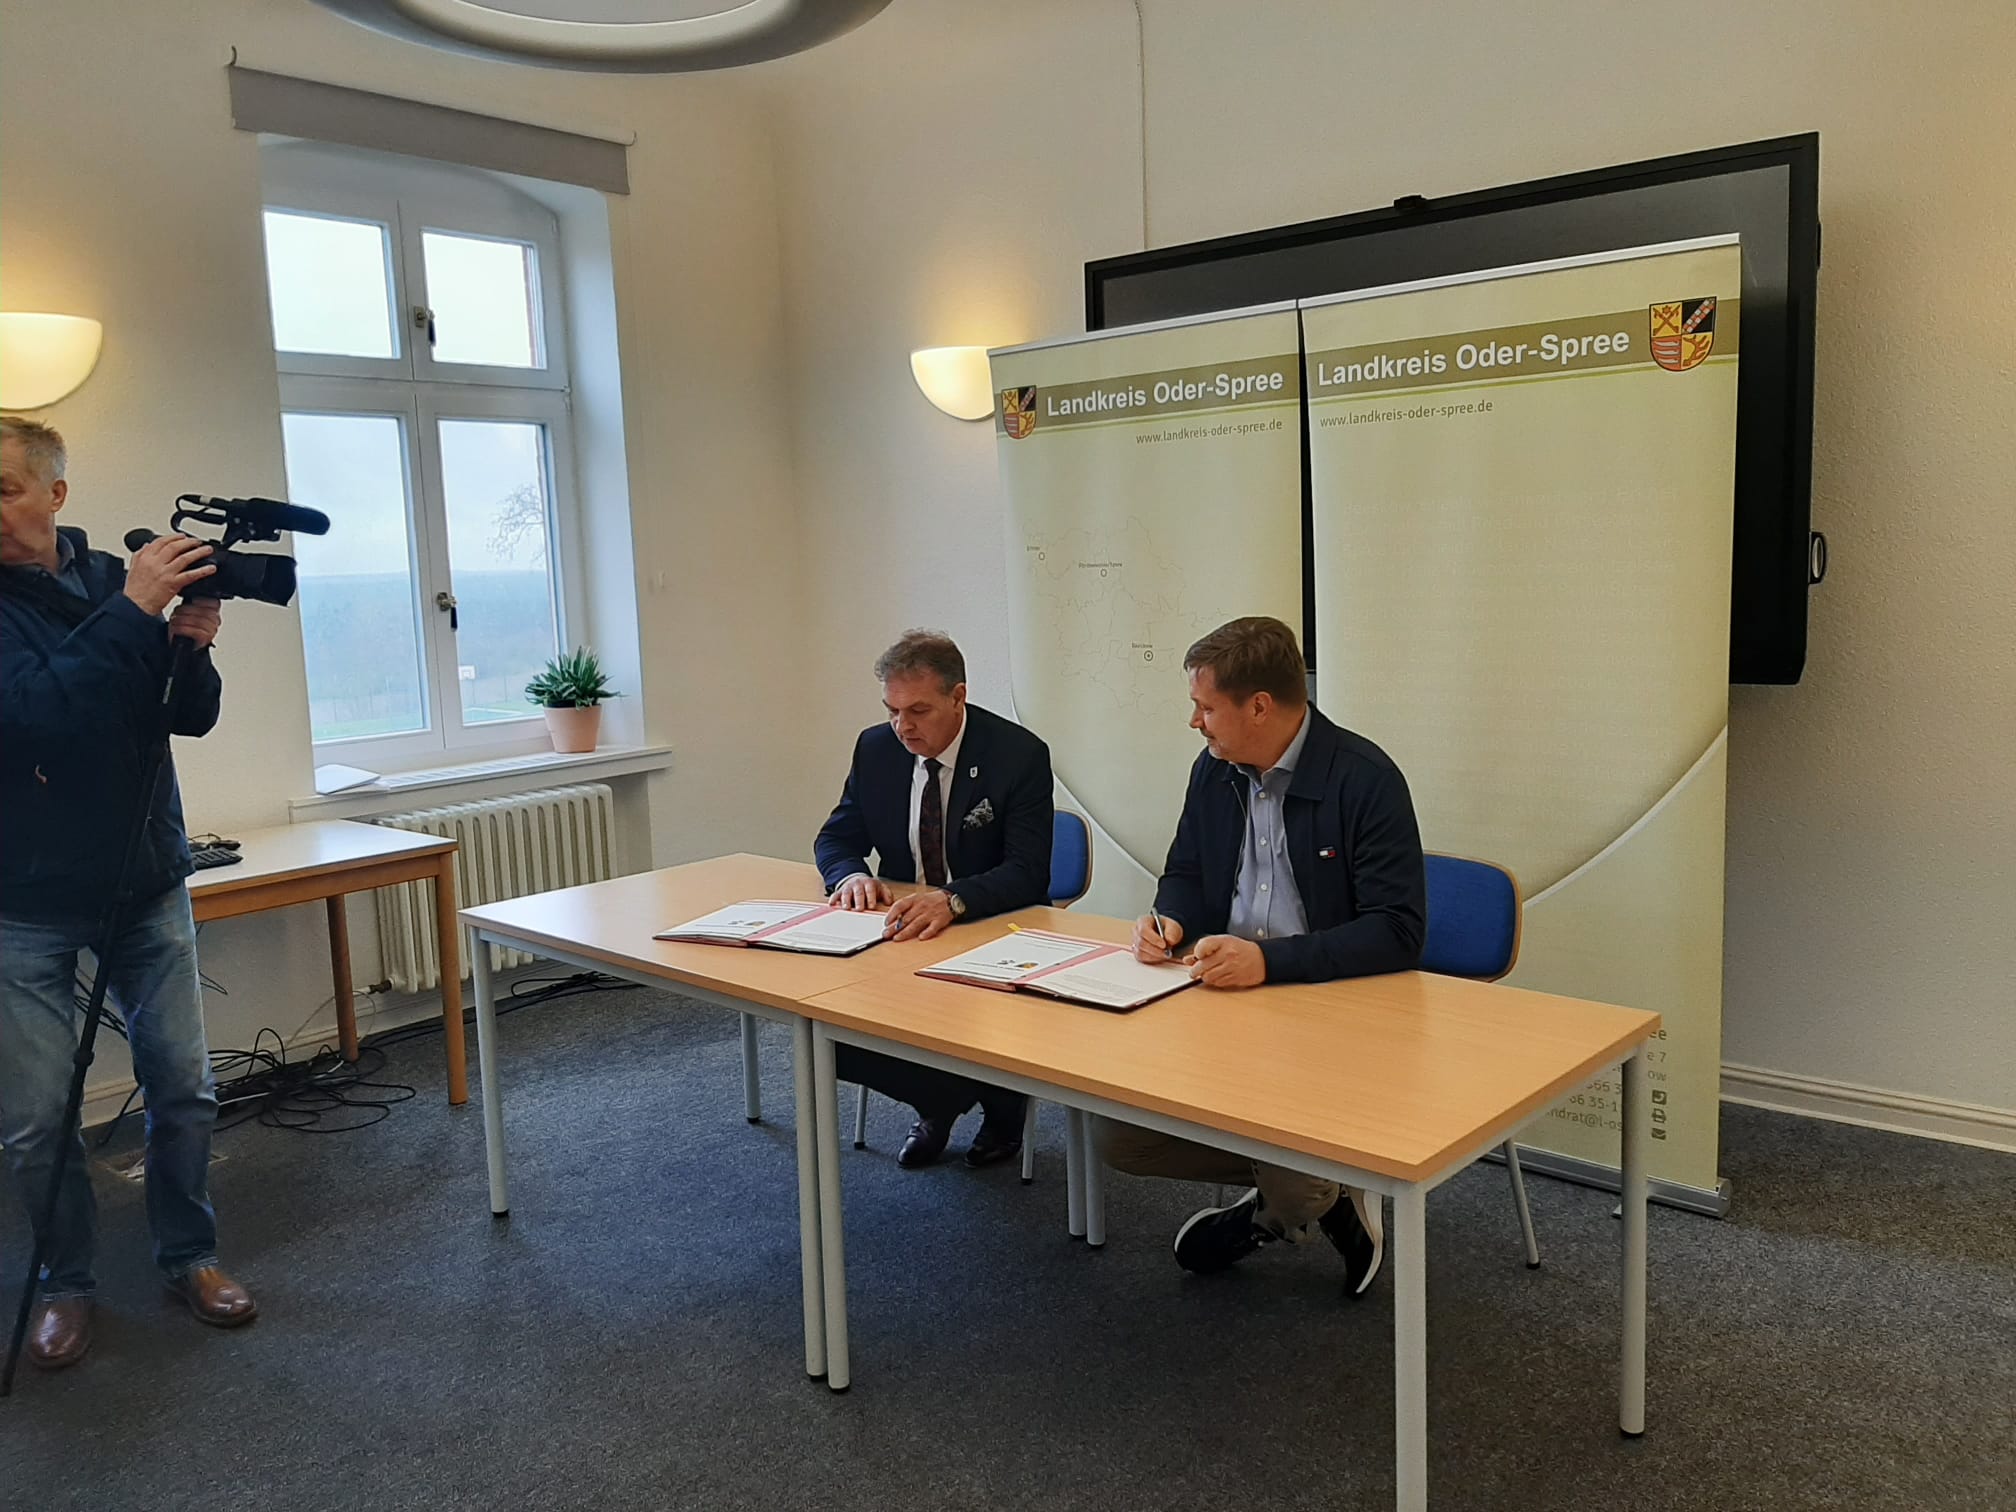 Moment podpisania umowy o współpracy przez wicestarostę powiatu choszczeńskiego Pawła Szubera (po lewej) i starostę powiatu Oder-Spree Franka Steffena (po prawej). Fot. Aleksandra Fedorska